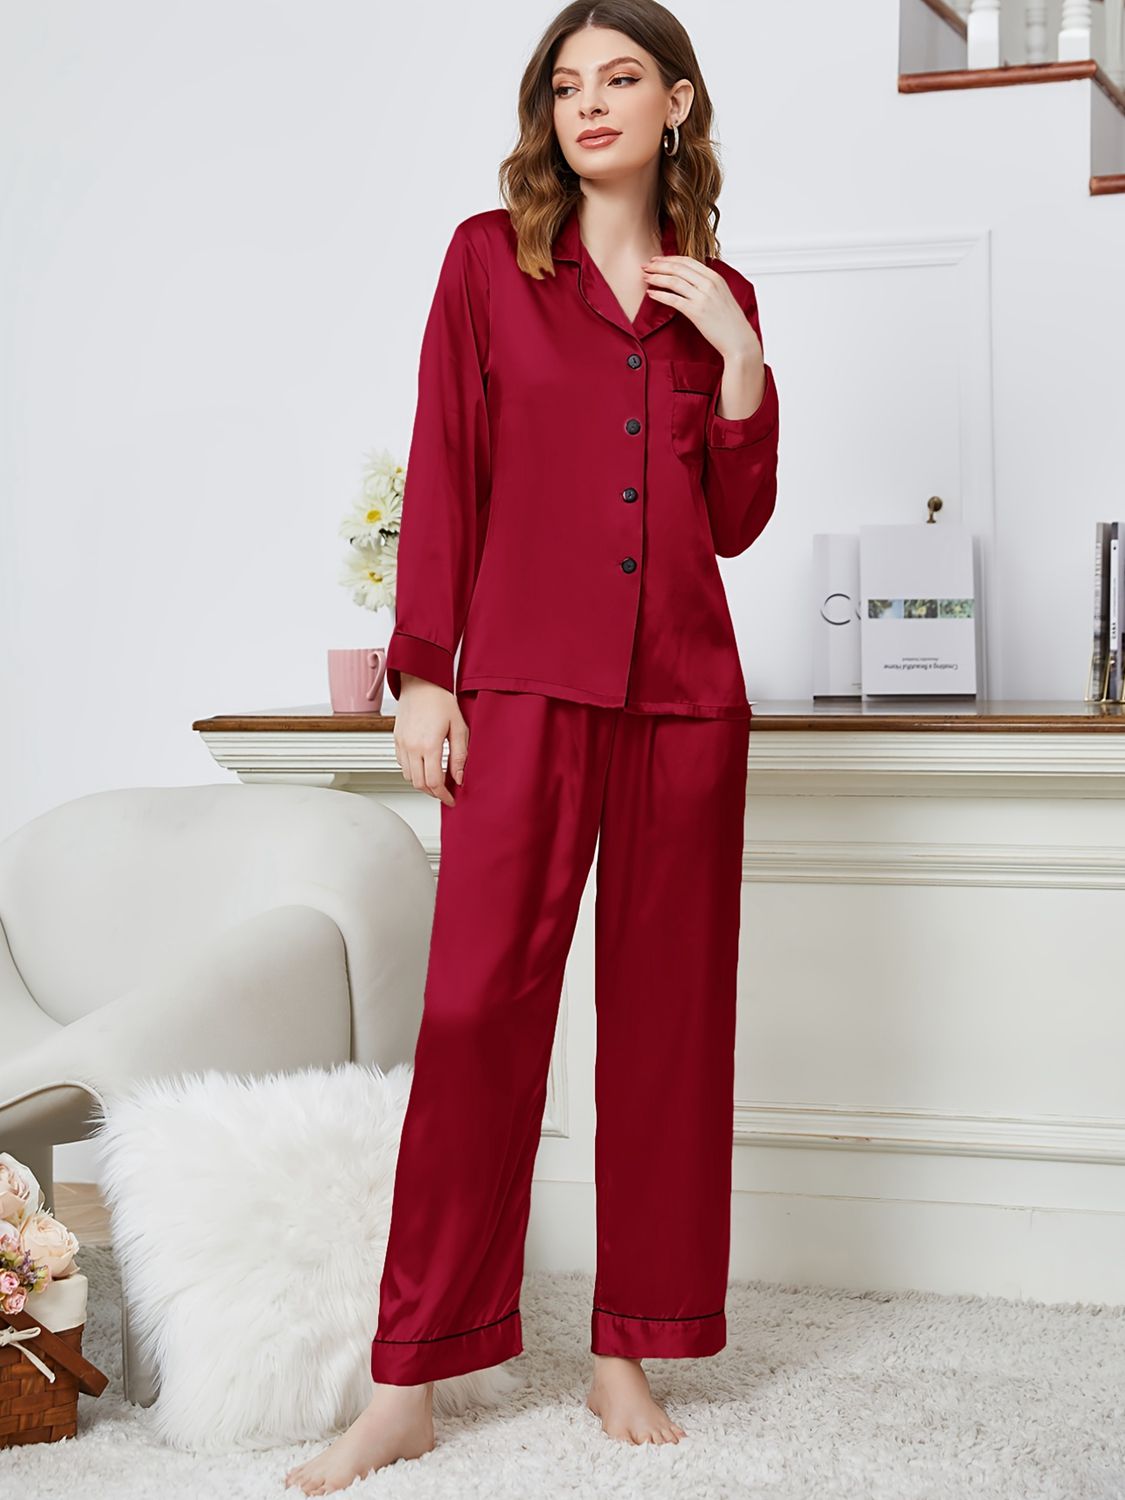 Women’s Lapel Collar Long Sleeve Top and Pants Pajama Set